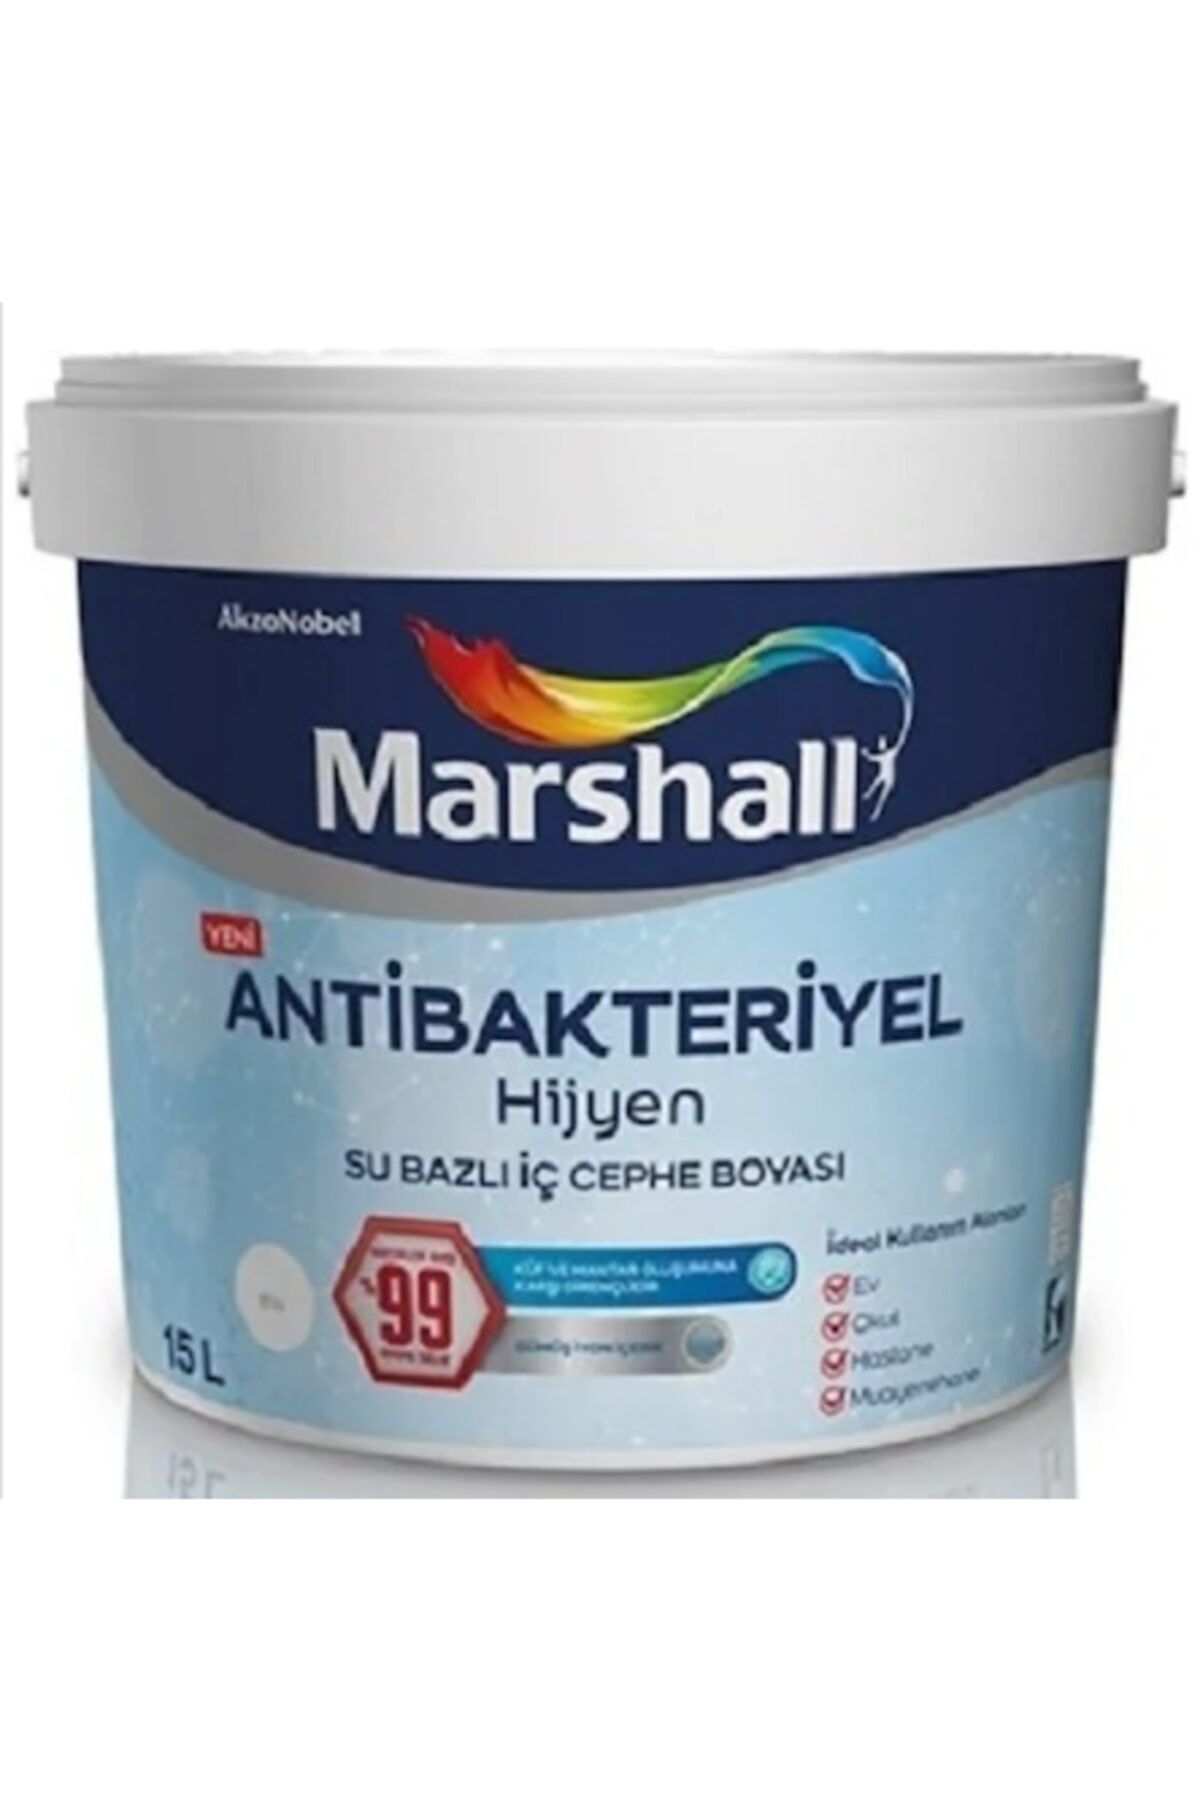 Marshall Antibakteriyel Hijyen Iç Cephe Boyası Fildişi 2.5 lt